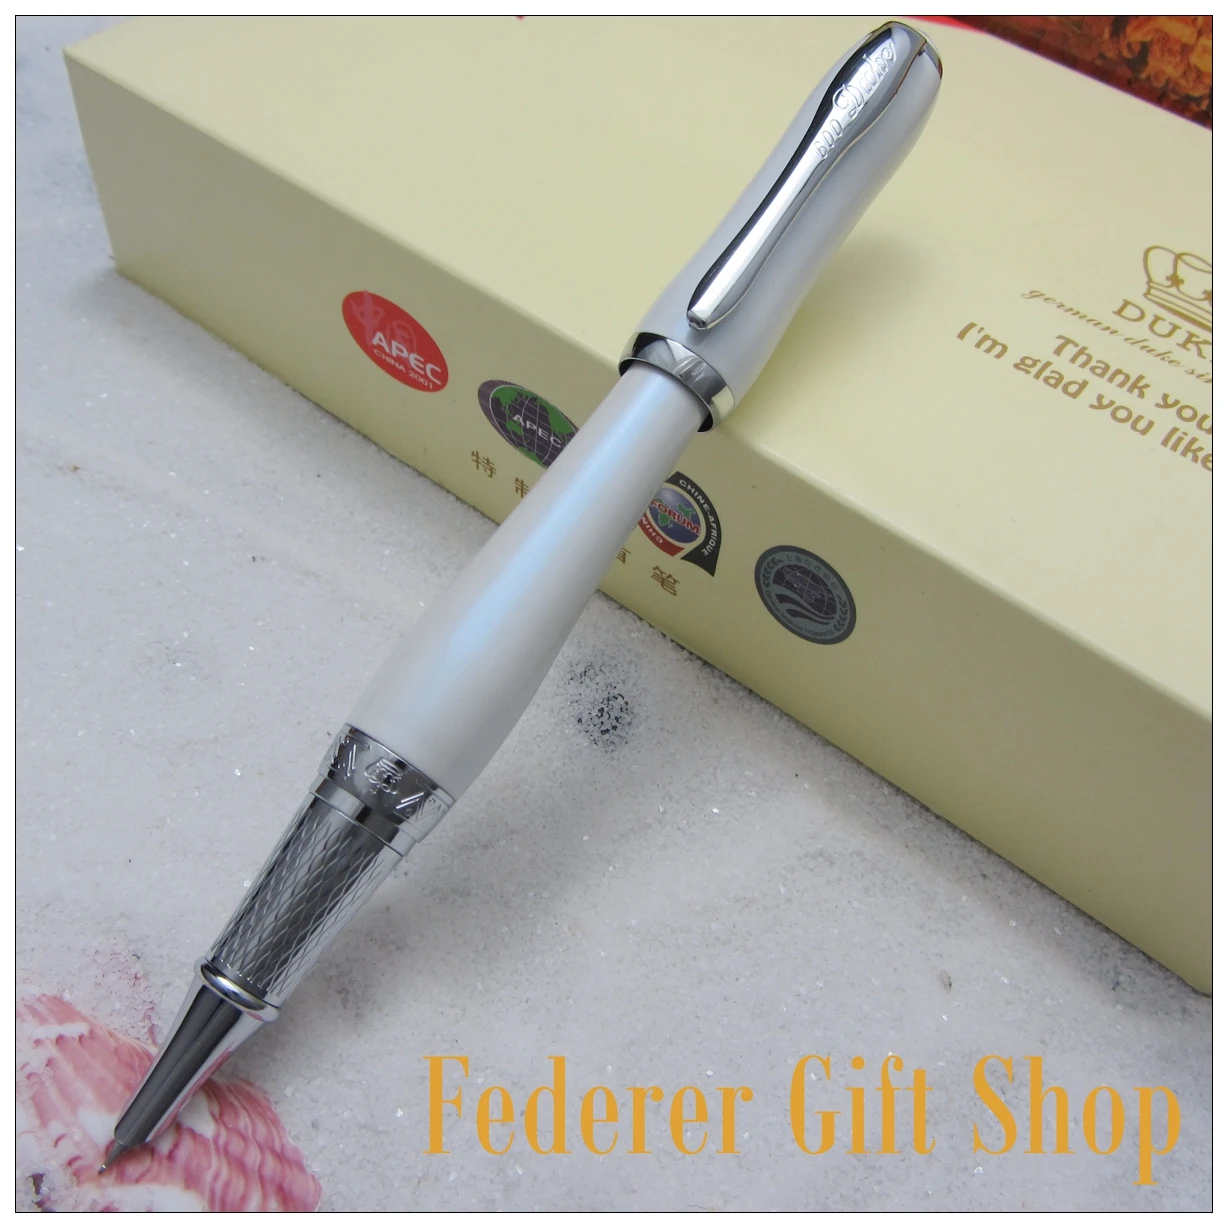 Duke женское элегантное розовое EF перо перьевая ручка металл подарок чернилами Топ Перл G06 с обычной подарочной коробке 5 цветов на выбор